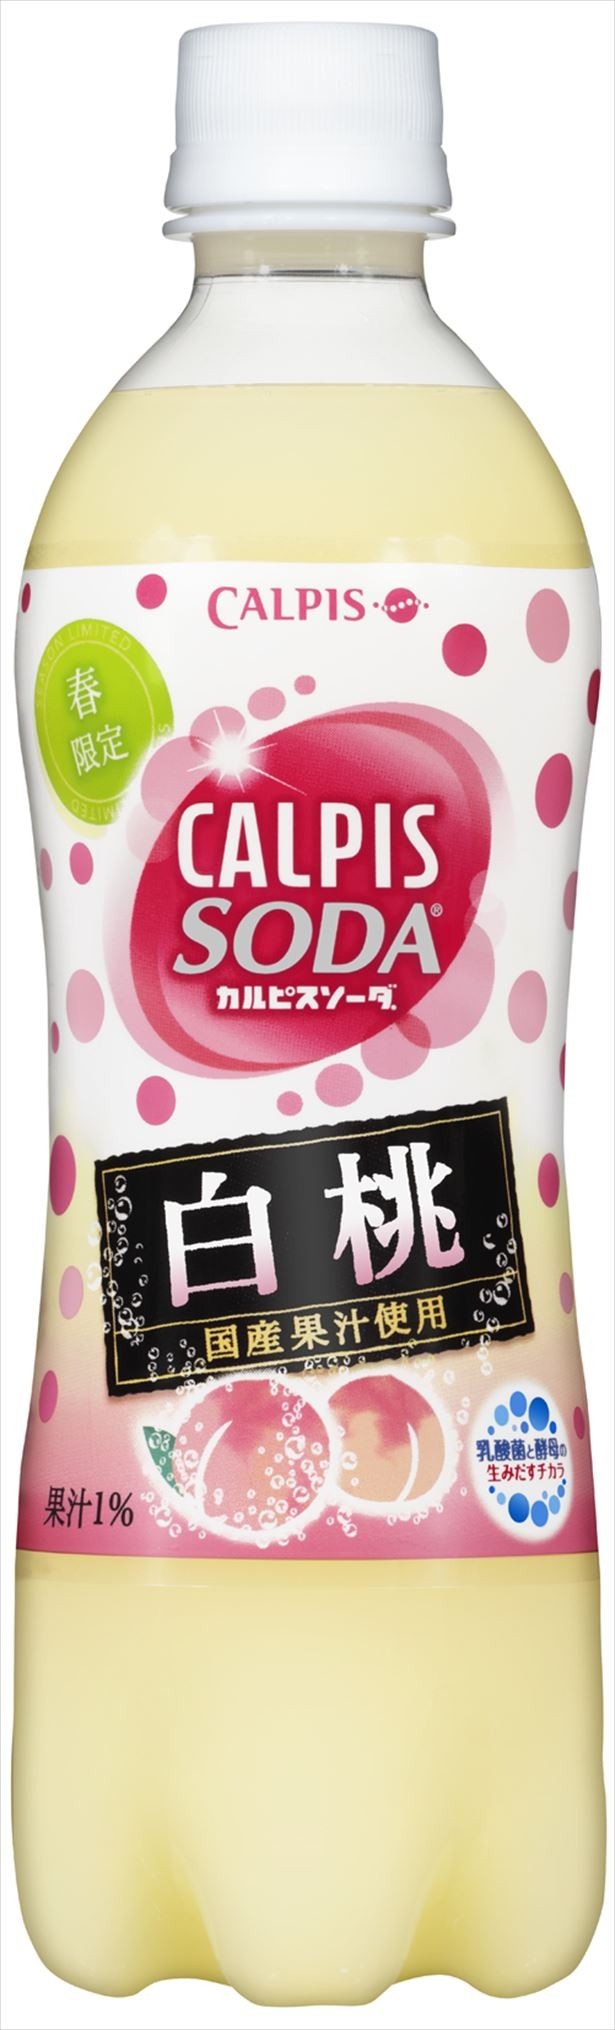 1月24日(火)から3月末まで発売される「カルピスソーダ 白桃」（希望小売価格・税抜140円）